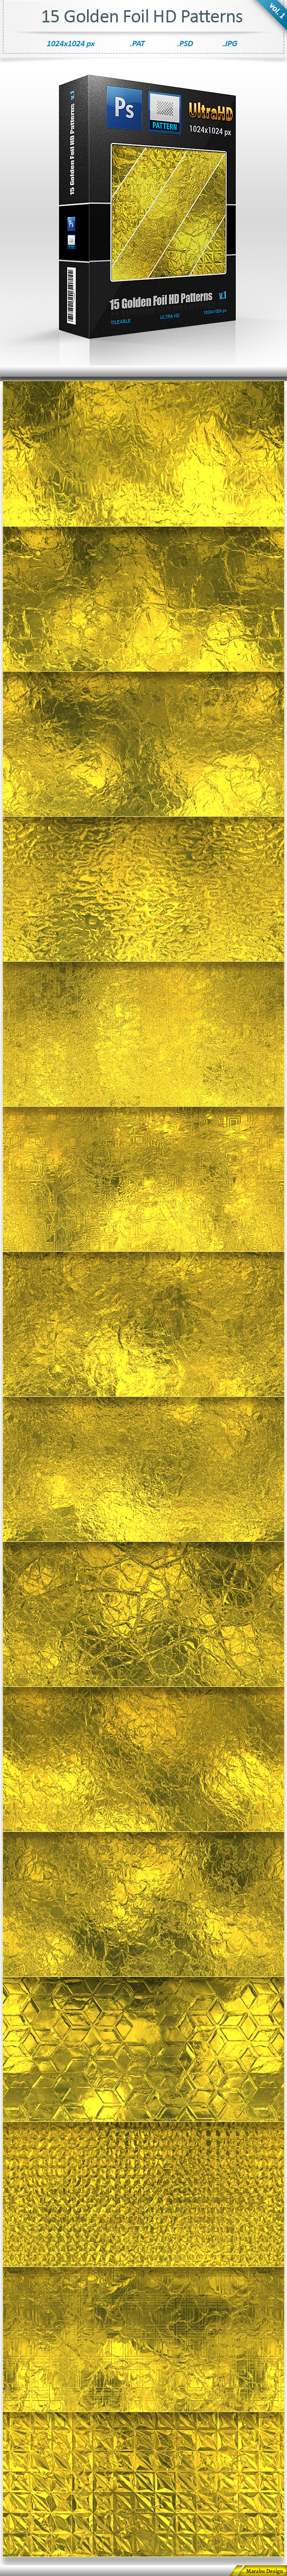 Golden Foil Tileable Patterns (vol 1)